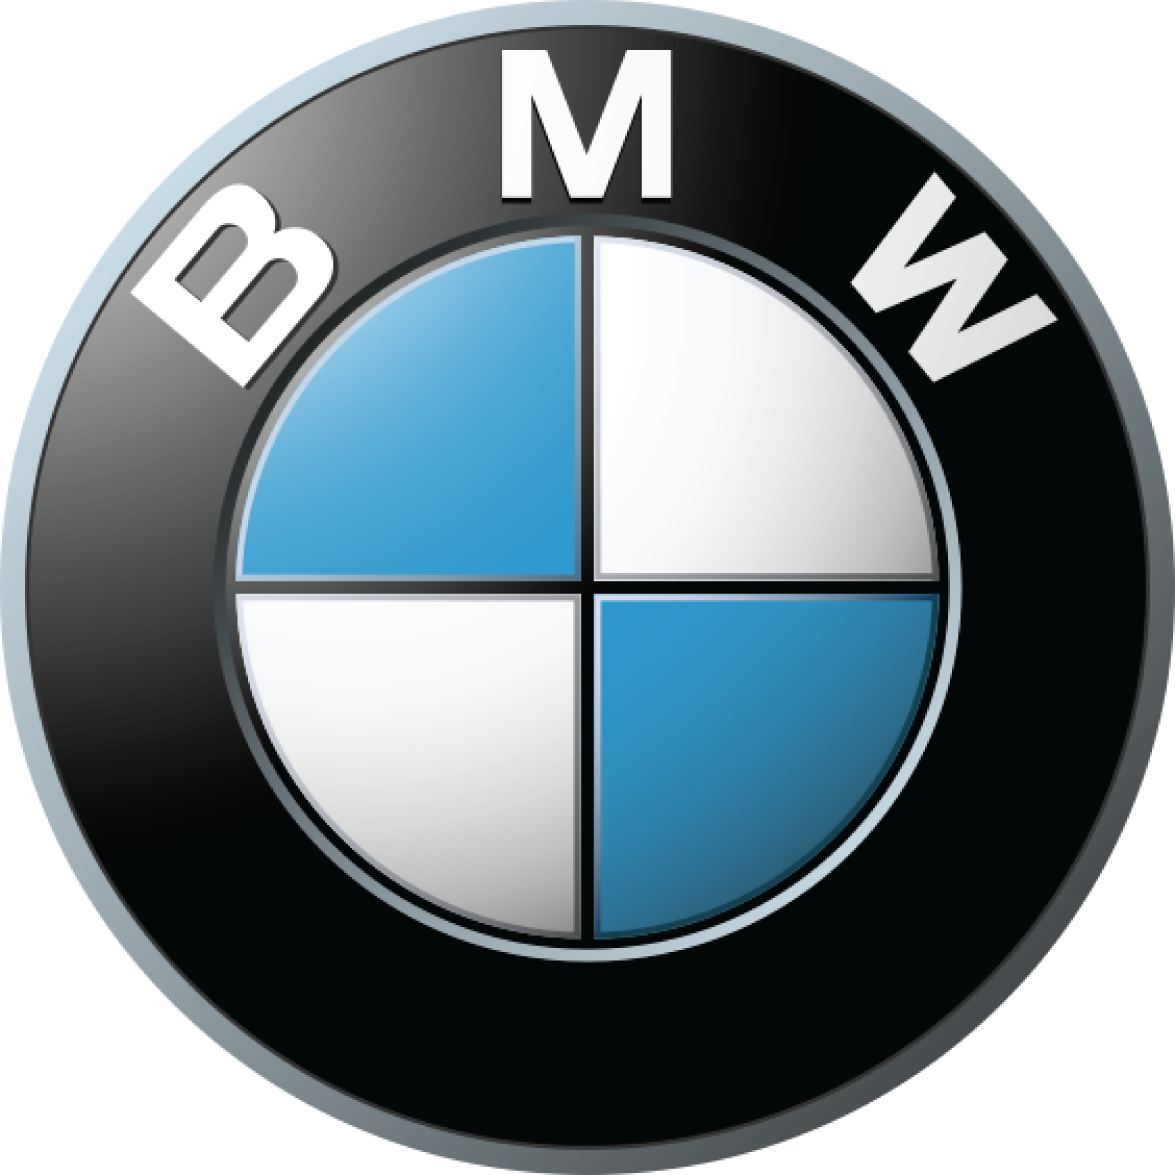 Bmw Car Logo Png Brand Image   Bmw Car Logo Png Brand Image